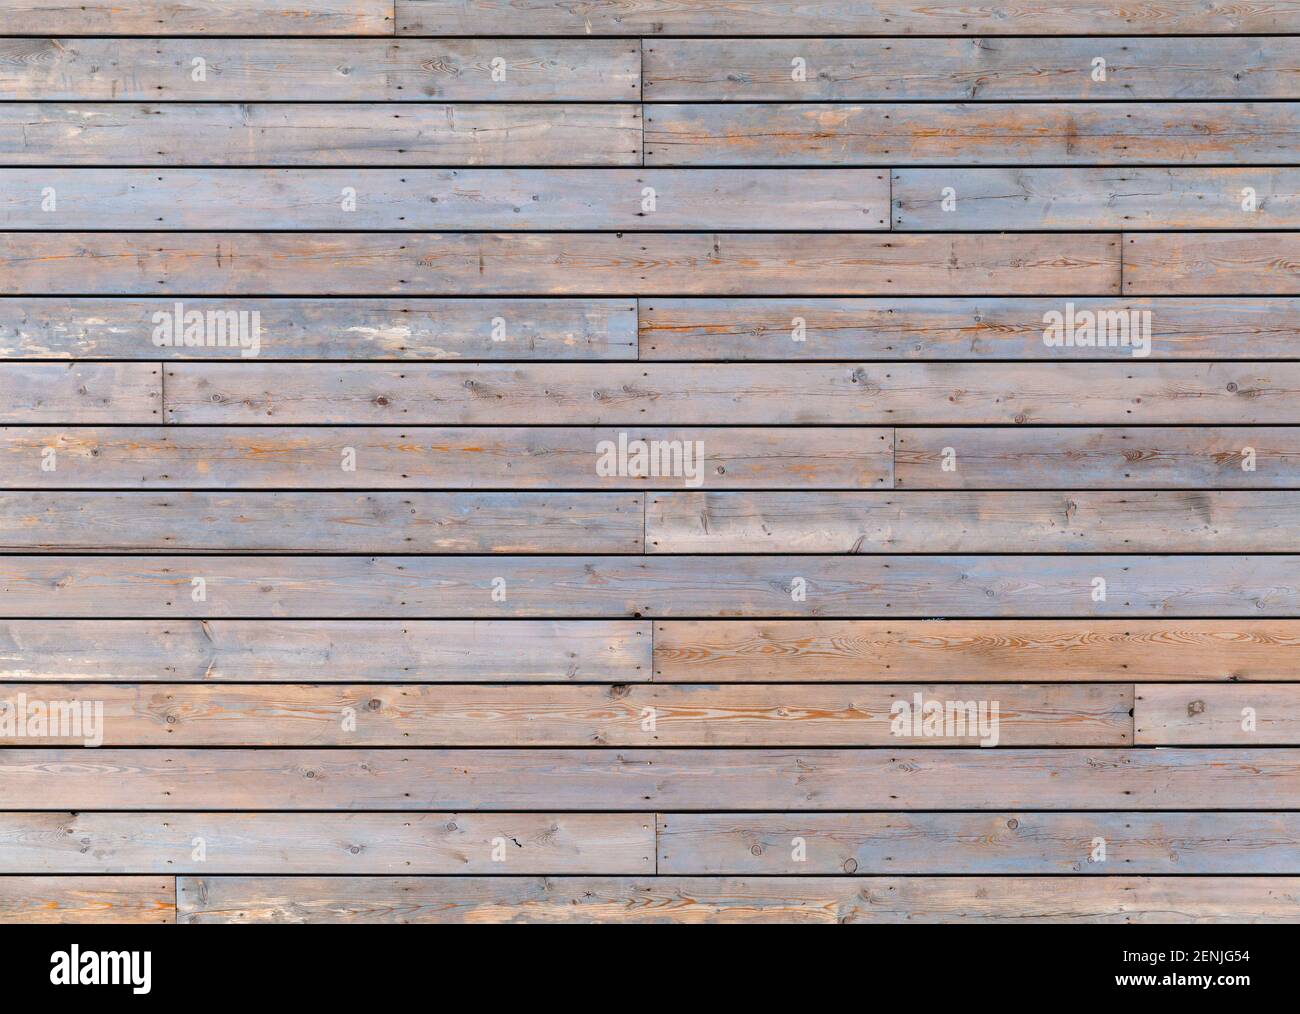 Texture photo d'arrière-plan en bois gris, vue de face Banque D'Images